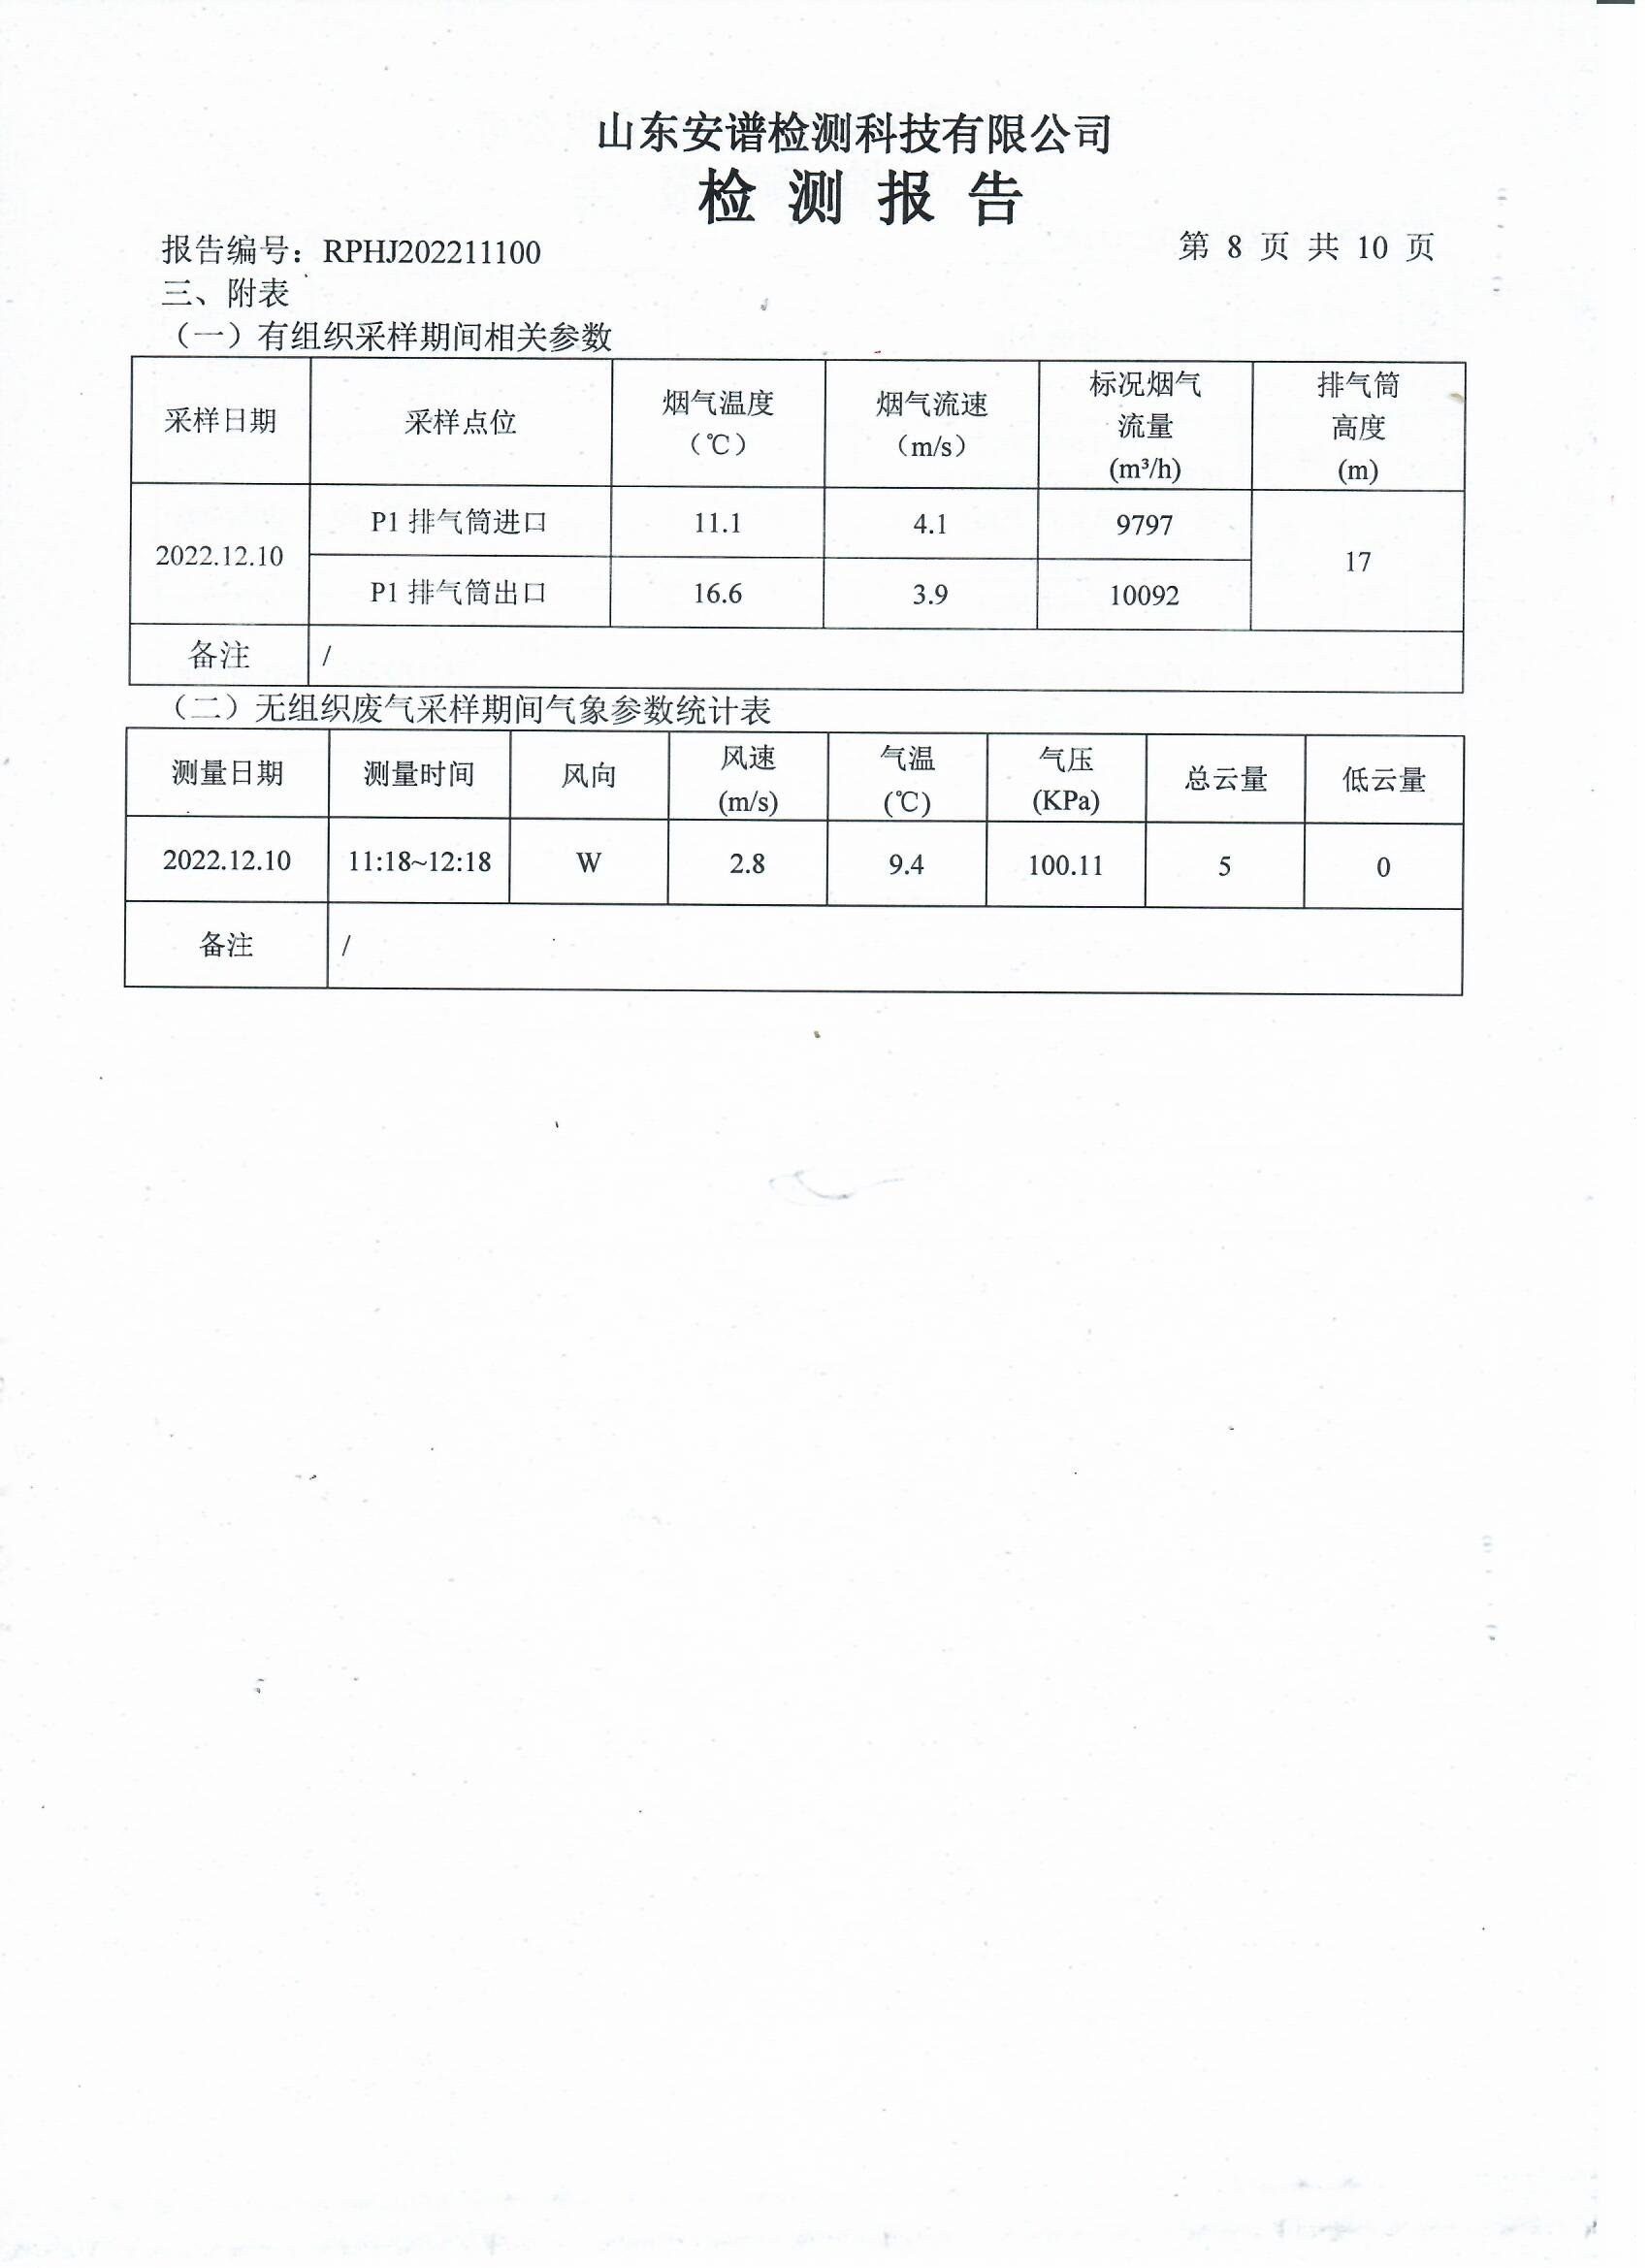 2022年第四季度检测报告公示 泰安杰盛(图10)